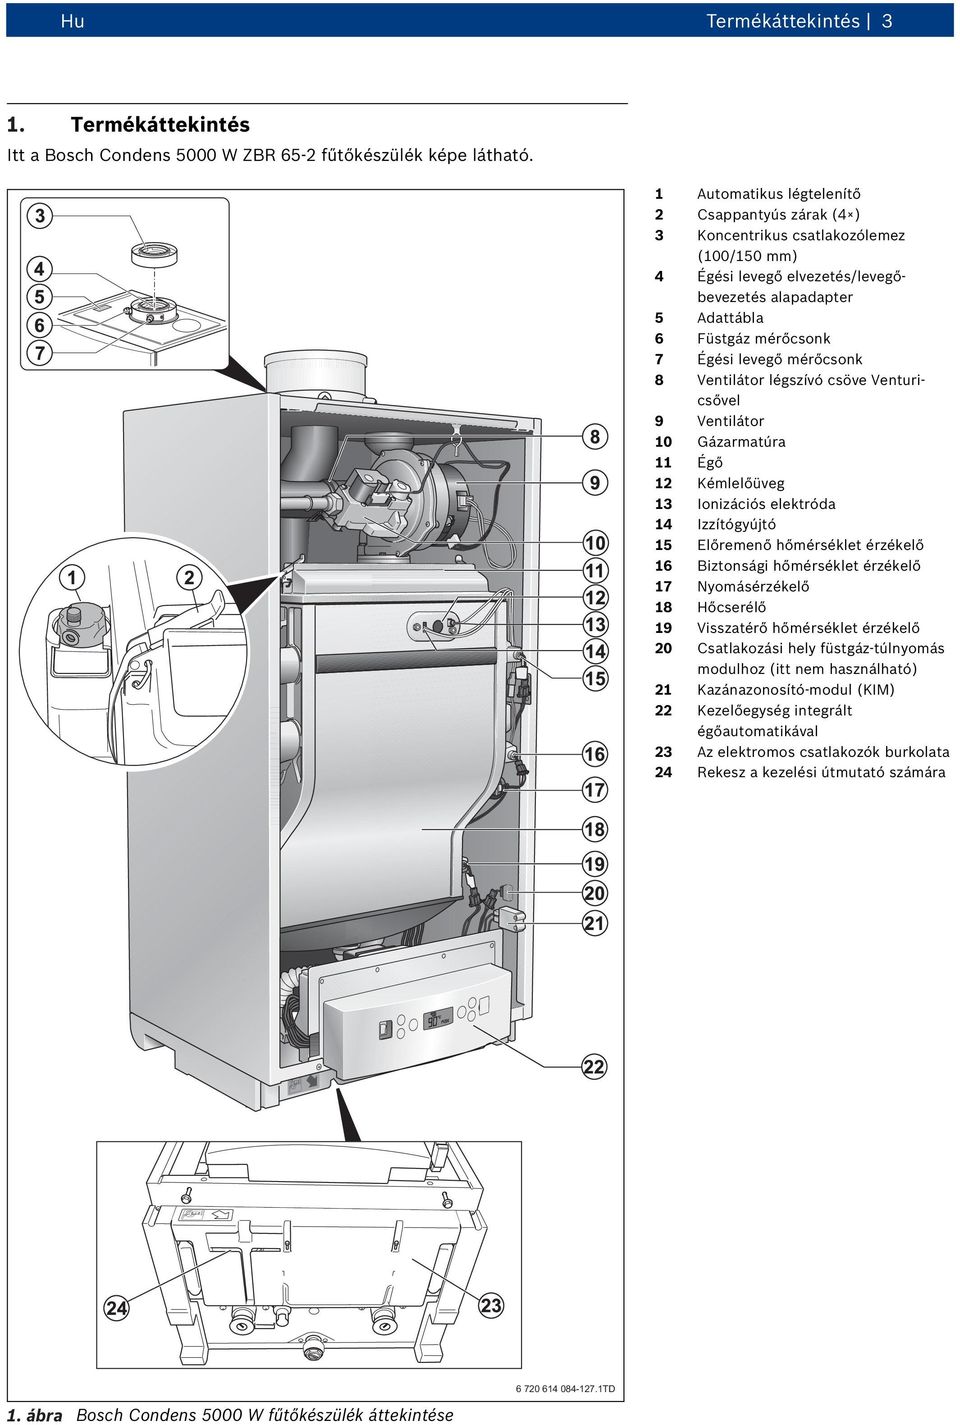 Gázüzemű kondenzációs készülék. Condens 5000 W ZBR 65-2 ZBR Tervezési  segédlet - PDF Ingyenes letöltés